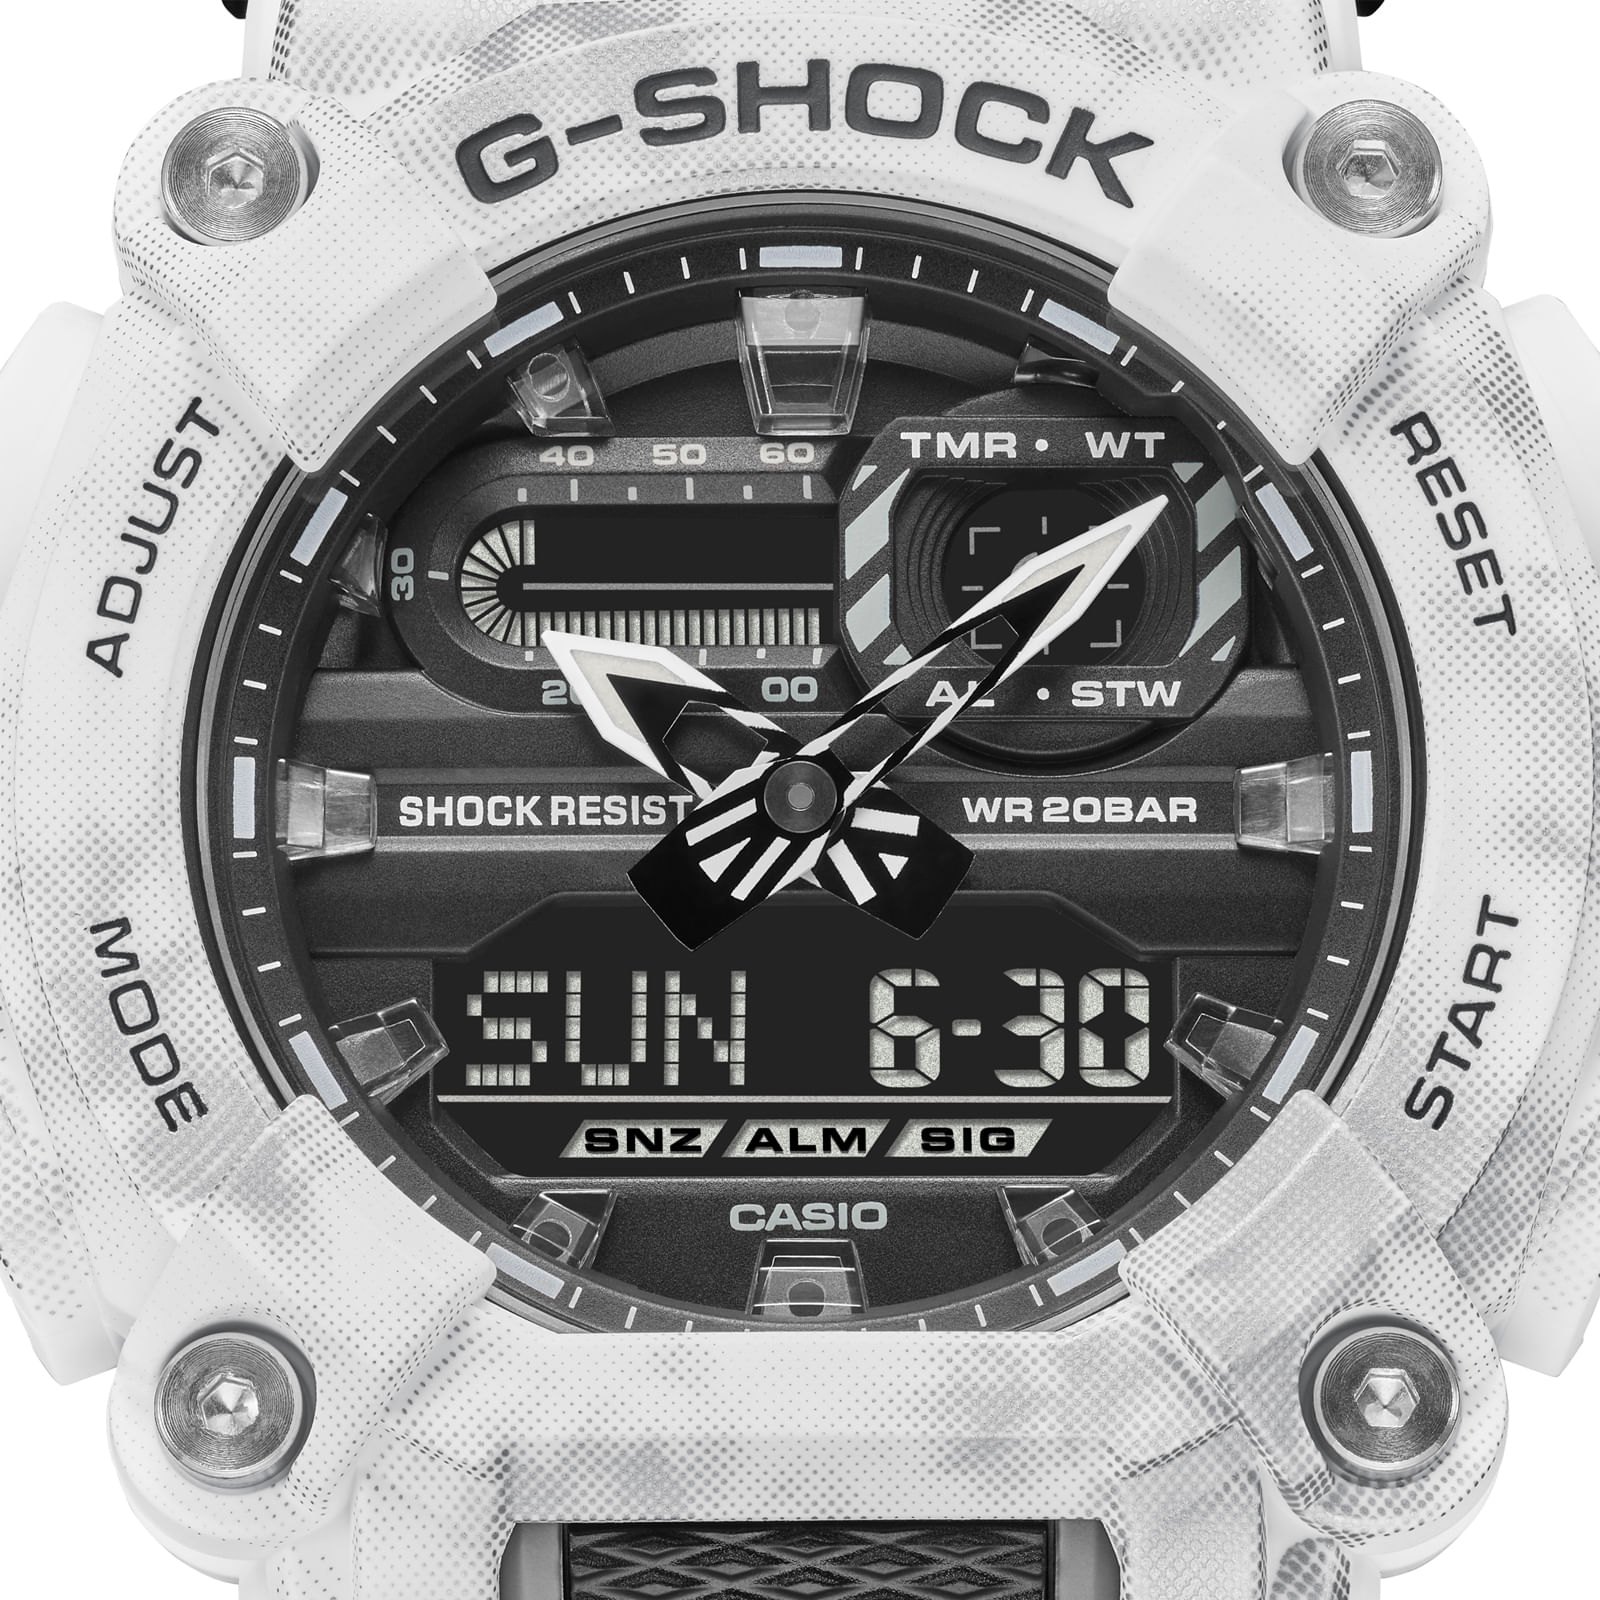 Reloj G-SHOCK GA-900GC-7A Resina Hombre Blanco